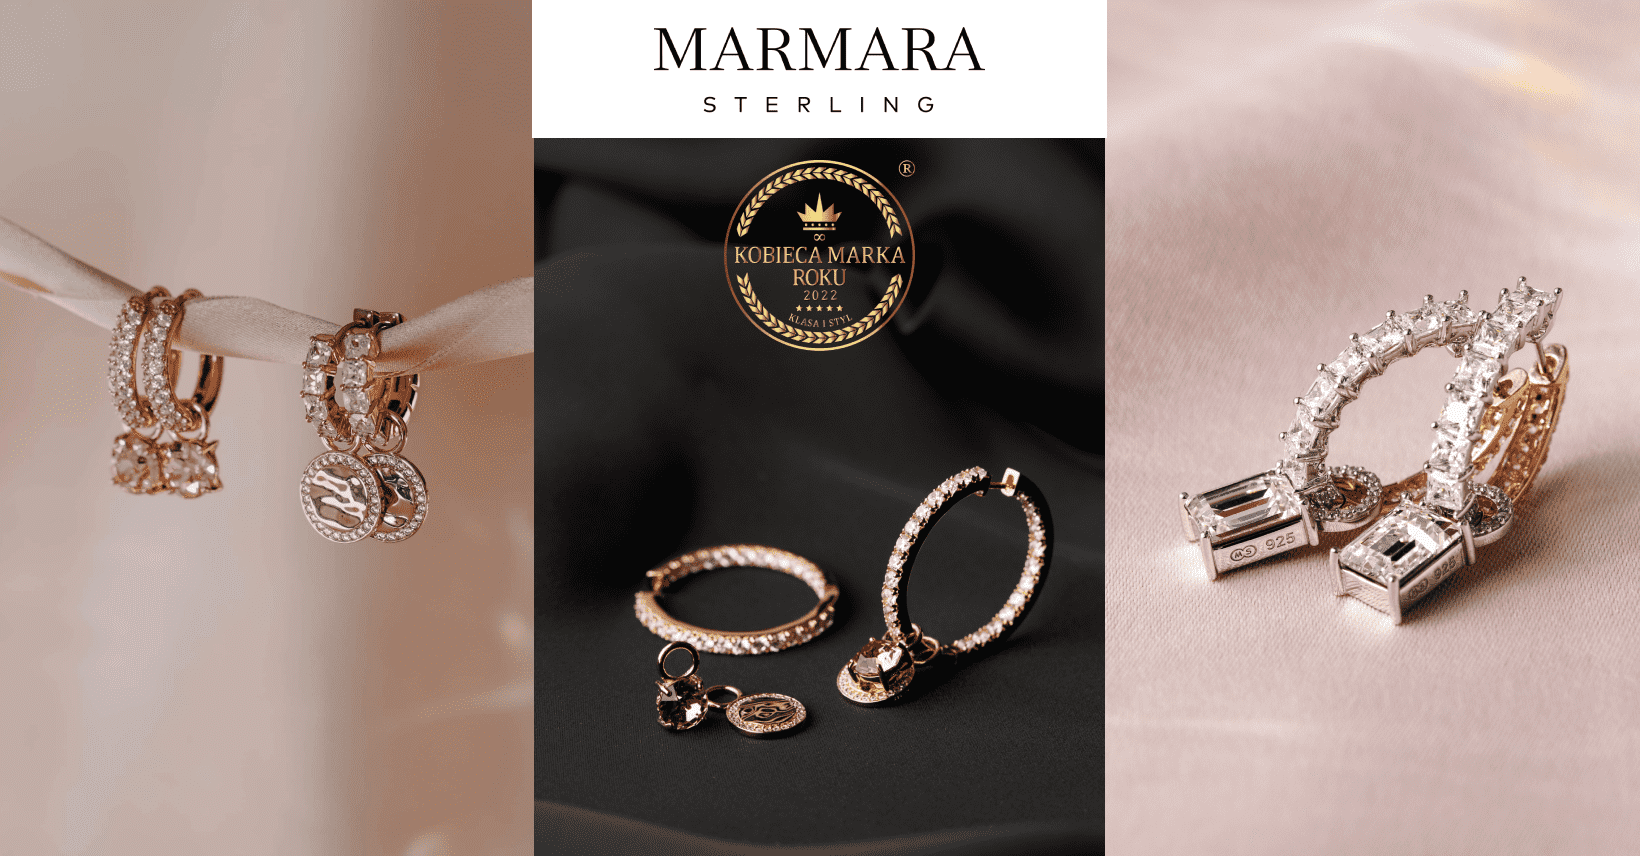 Marmara Sterling - wysokiej jakości biżuteria i sposób, w jaki żyje współczesna kobieta!